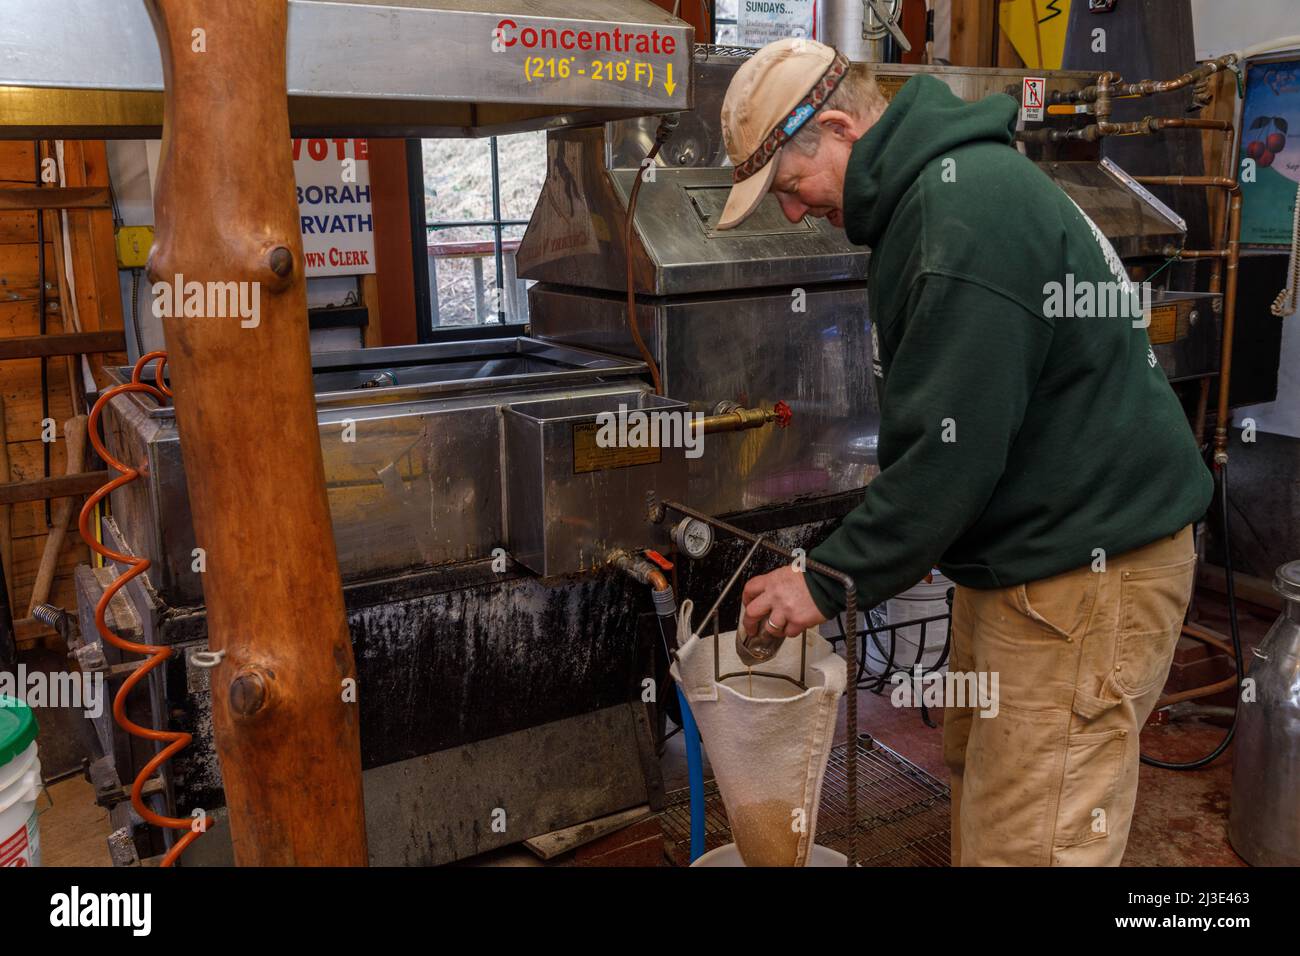 Haciendo jarabe de arce: El hombre limpia 'arena rugosa' de su evaporador. Cherry Valley, Condado de Otsego, Estado de Nueva York. Foto de stock